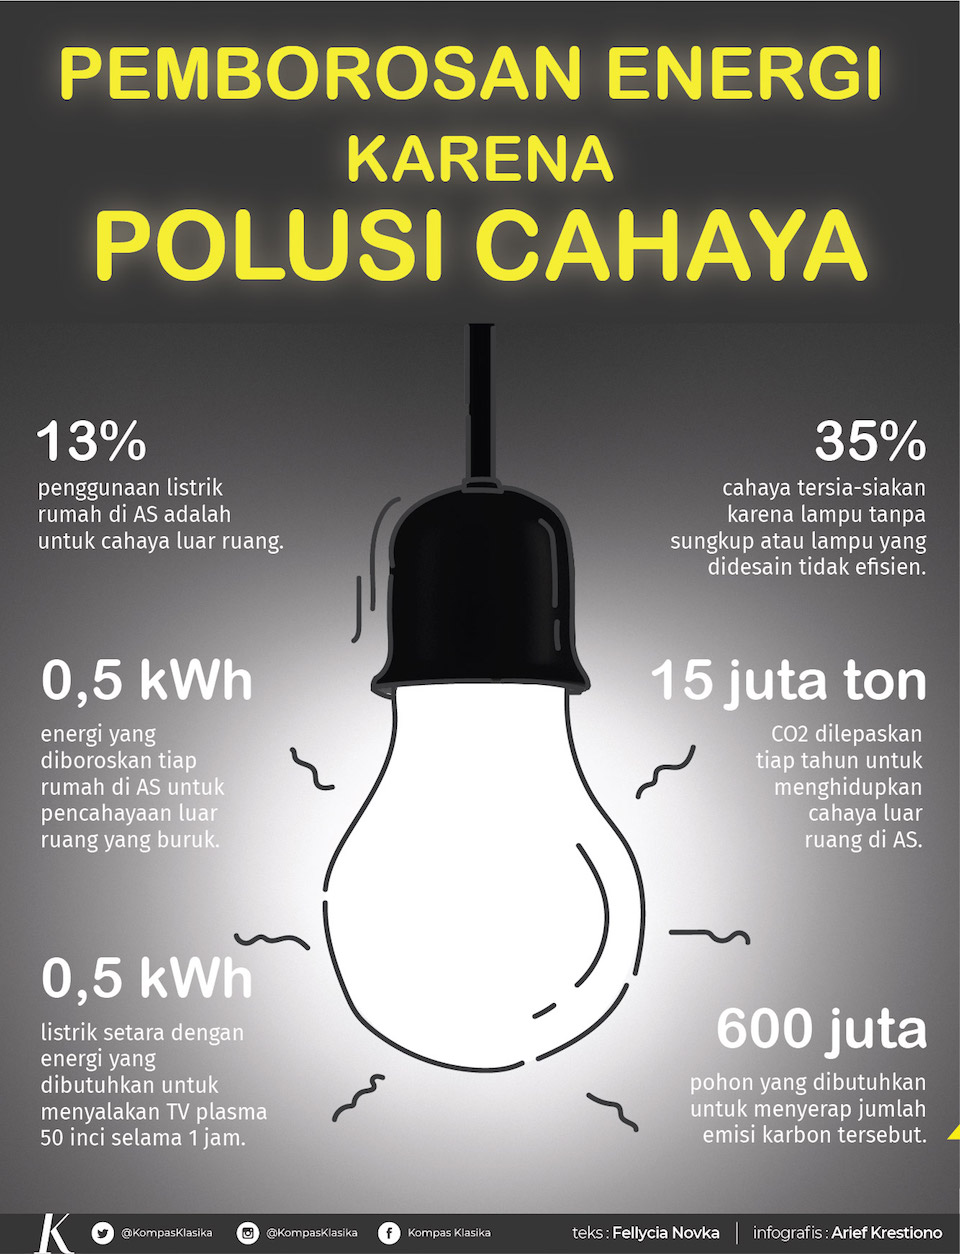 Pemborosan energi karena polusi cahaya